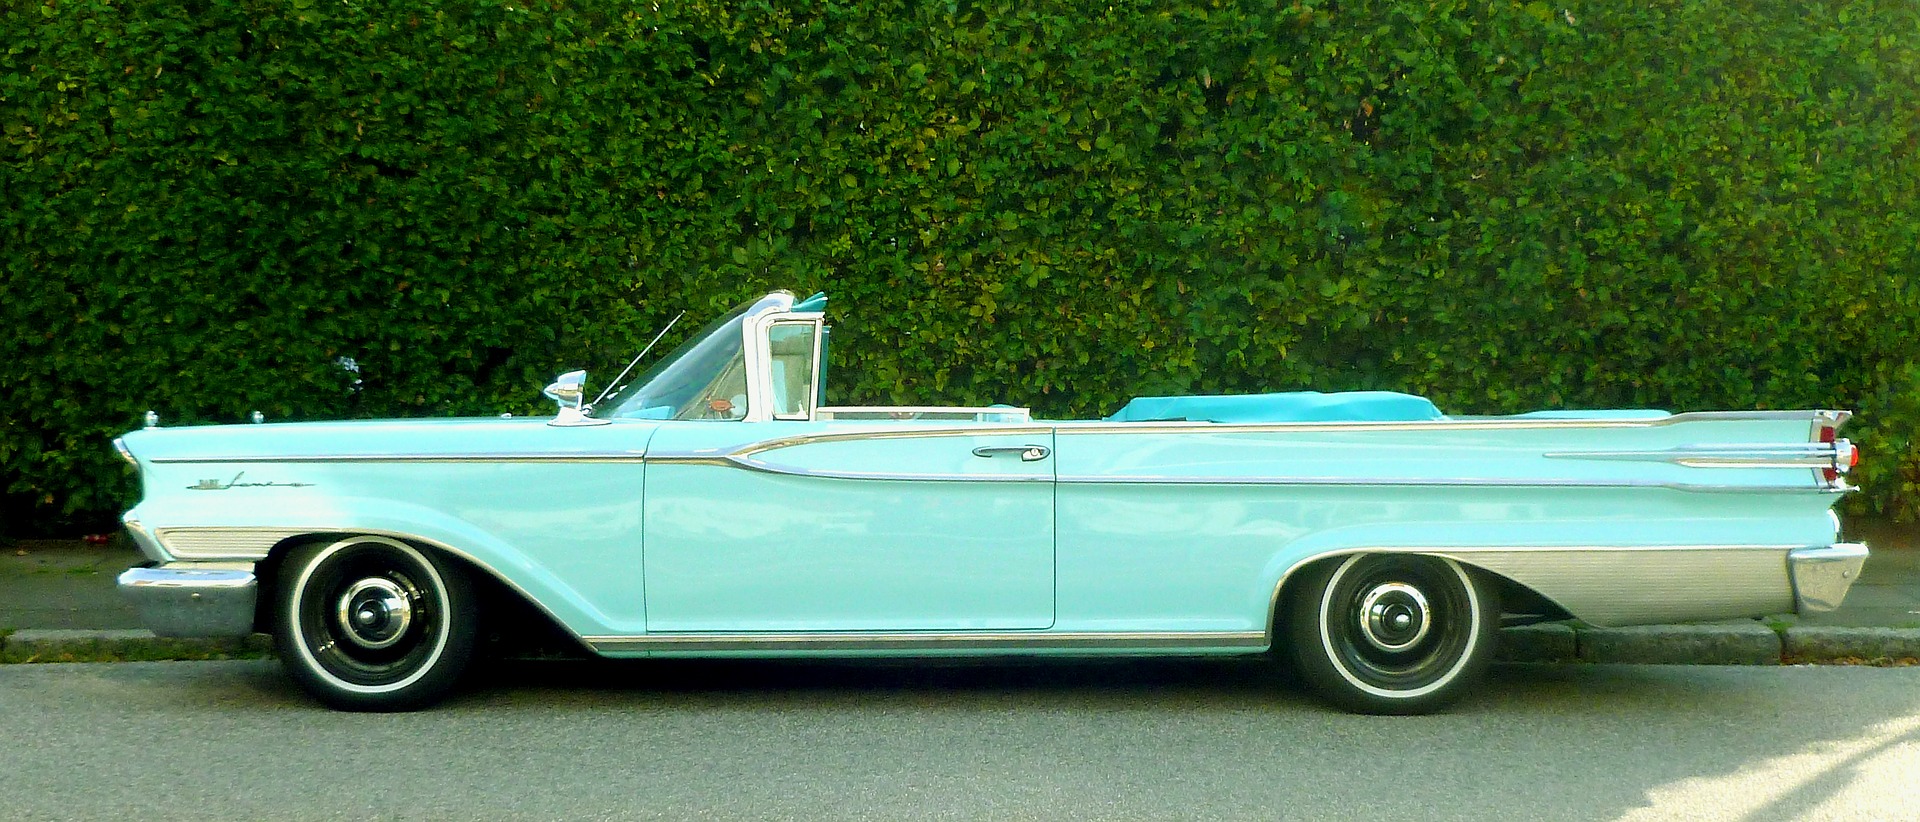 Ein amerikanischer Trend, doch das Autokino erfreute sich auch in Deutschland zeitweise großer Beliebtheit. Bildquelle: pixabay.de